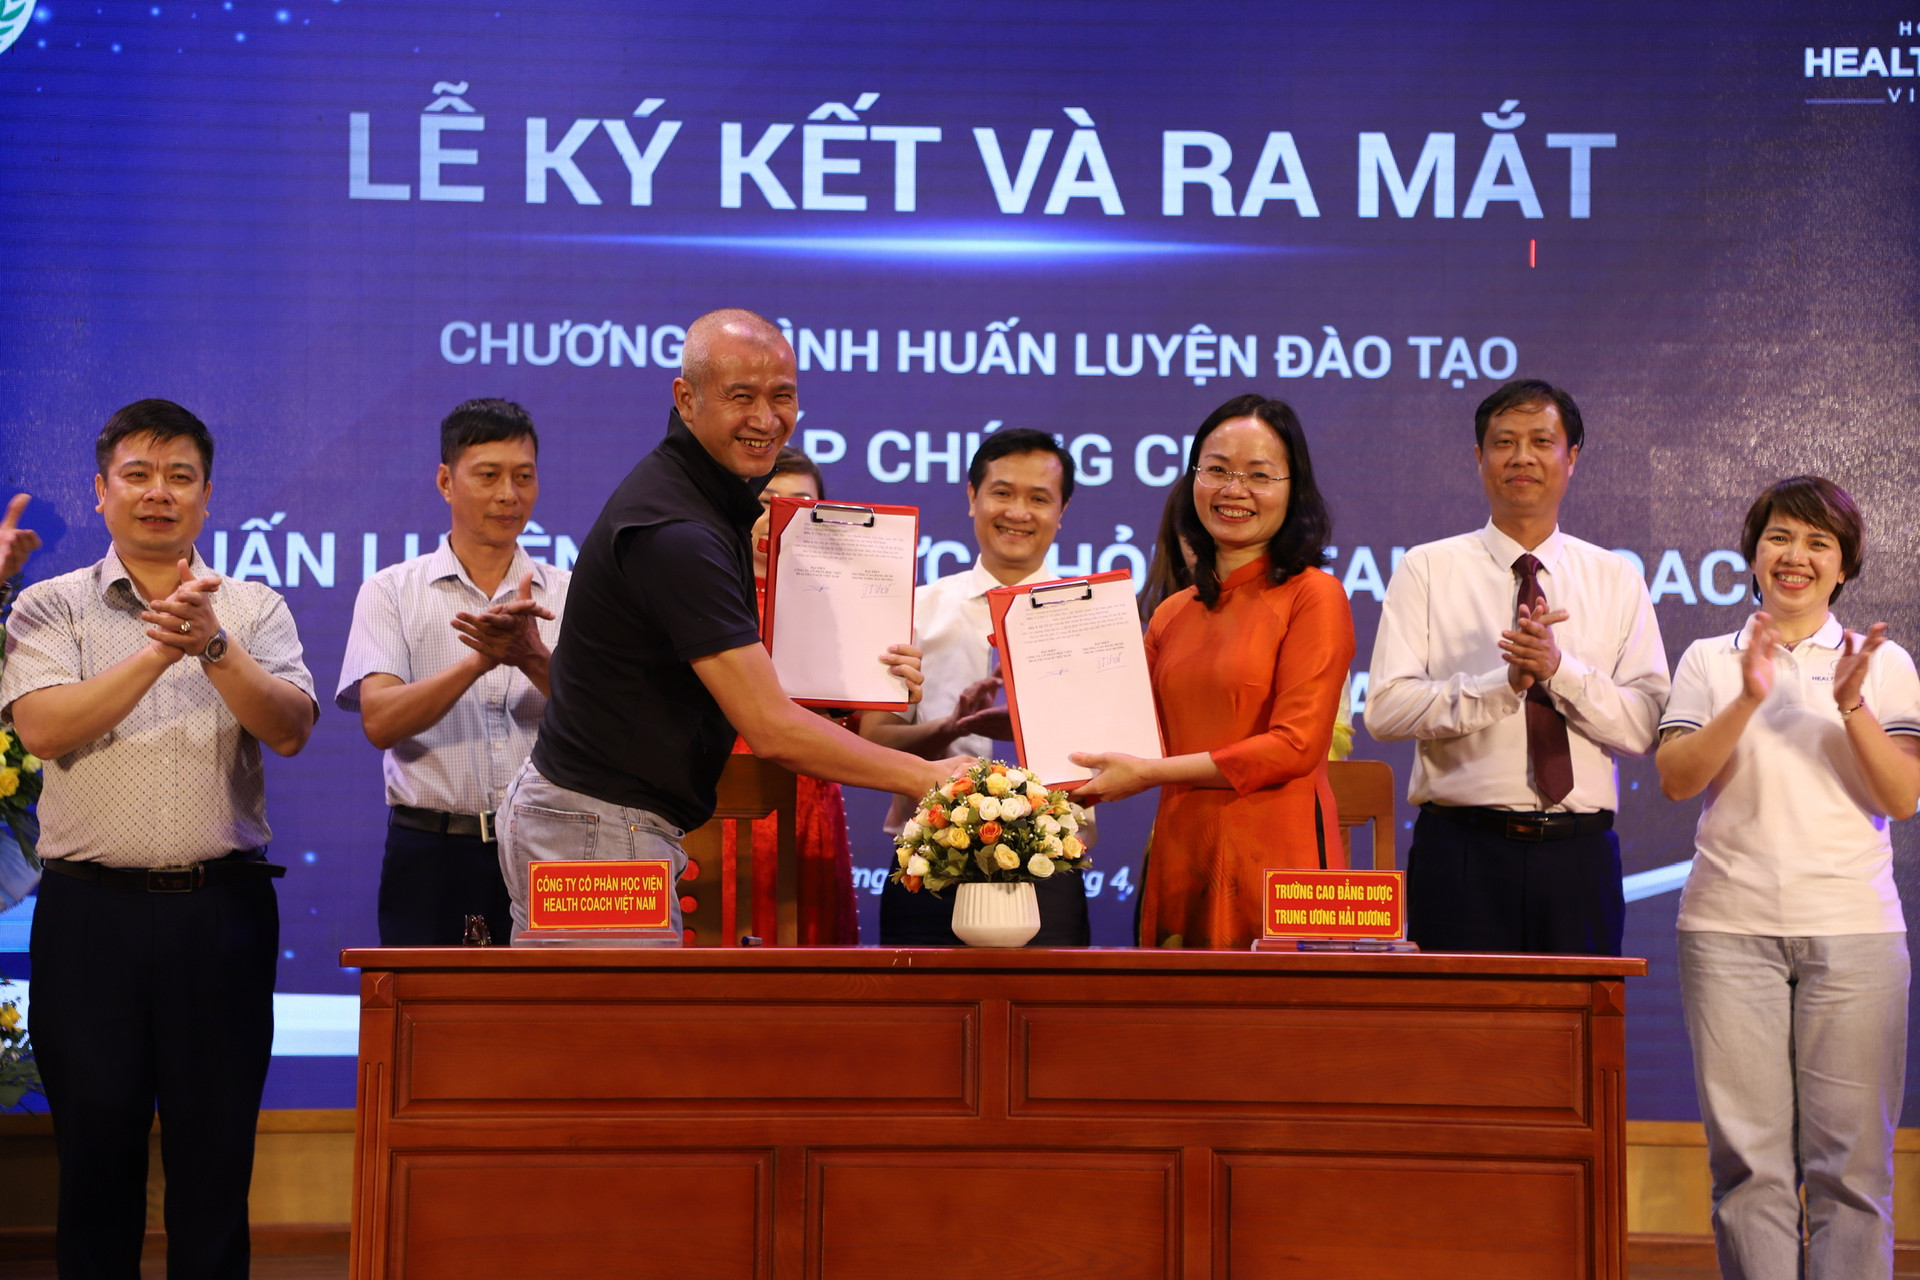 1.Lãnh đạo Trường Cao đẳng Dược Trung ương Hải Dương và Công ty CP Học viện Health Coach Việt Nam ký kết thoả thuận hợp tác chương trình đào tạo cấp chứng chỉ huấn luyện viện sức khoẻ